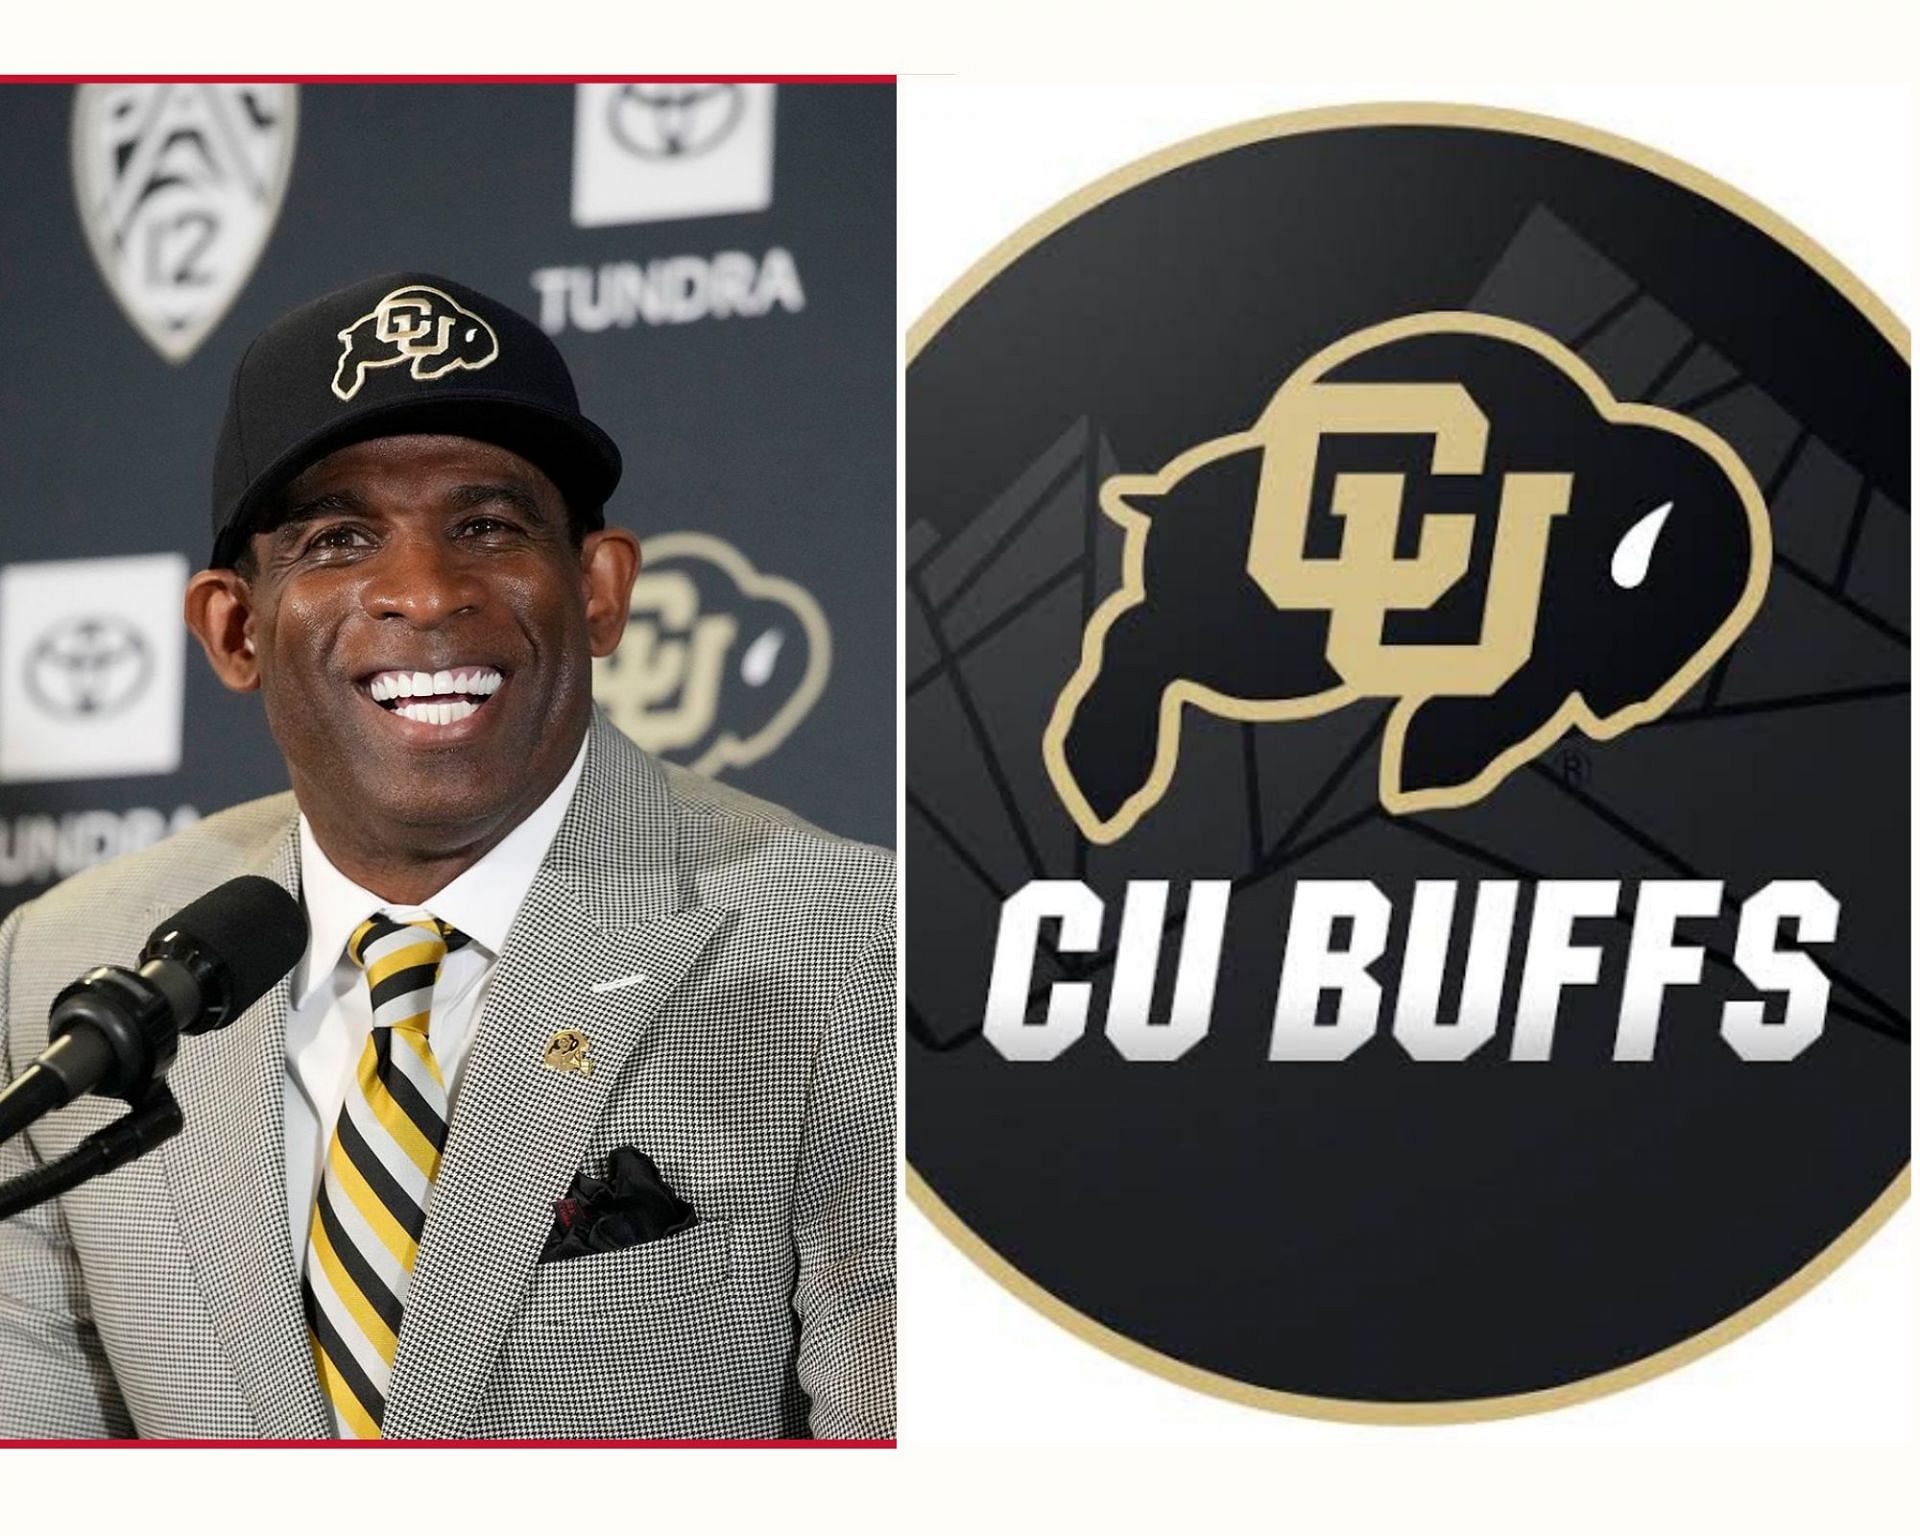 Colorado Upsets No. 17 TCU In Sanders' Debut As Buffs Coach